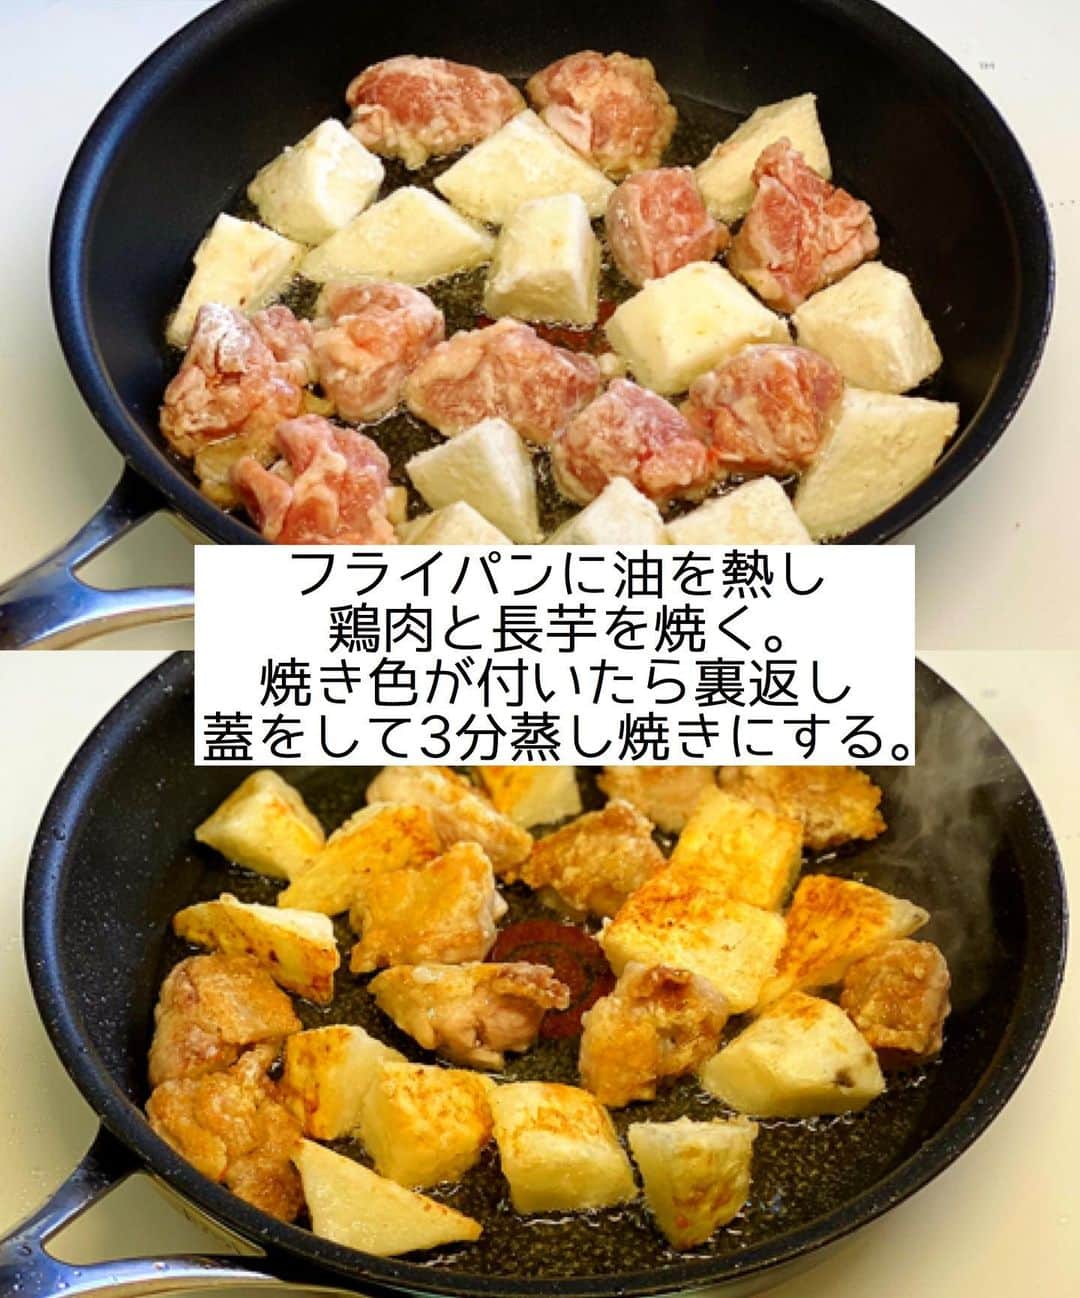 Mizuki【料理ブロガー・簡単レシピ】さんのインスタグラム写真 - (Mizuki【料理ブロガー・簡単レシピ】Instagram)「・﻿ 【#レシピ 】ーーーーーーーーー﻿ ♡長芋入りヤンニョムチキン♡﻿ ーーーーーーーーーーーーーーー﻿ ﻿ ﻿ ﻿ おはようございます(*^^*)﻿ ﻿ 今日ご紹介させていただくのは﻿ \ 長芋入りヤンニョムチキン /﻿ ﻿ カリッと焼けたチキンと﻿ ホクホクの長芋に﻿ 甘辛だれが相性抜群！！﻿ ボリュームたっぷり&﻿ 間違いなしのやみつきおかずです♡﻿ ﻿ 揚げずに作れるので﻿ お気軽にお試し下さいね♩﻿ これ、おすすめですよ〜(*´艸`)﻿ ﻿ ﻿ ﻿ ＿＿＿＿＿＿＿＿＿＿＿＿＿＿＿＿＿＿＿＿﻿ 【2人分】﻿ 鶏もも肉...小1枚(200g)﻿ 長芋...10cm(200g)﻿ 塩こしょう...少々﻿ 片栗粉...適量﻿ サラダ油...大3﻿ ●砂糖・みりん・コチュジャン・ケチャップ...各大1﻿ ●醤油・ごま油...各大1/2﻿ ●にんにくチューブ...3cm﻿ ごま...適量﻿ ﻿ 1.鶏肉と長芋は3cm大に切り、塩こしょうを振って片栗粉をまぶす。●は合わせておく。﻿ 2.フライパンにサラダ油を中火で熱し、鶏肉と長芋を焼く。焼き色が付いたら裏返し、蓋をして弱めの中火で3分蒸し焼きにする。﻿ 3.余分な油を拭き取り、●を加えて煮からめ、仕上げにごまを振る。﻿ ￣￣￣￣￣￣￣￣￣￣￣￣￣￣￣￣￣￣￣￣﻿ ﻿ ﻿ ﻿ 《ポイント》﻿ ♦︎見た目ほど辛くはありません♩﻿ ♦︎鶏肉と長芋はしっかり焼き色を付けてから裏返して下さい♩﻿ ♦︎鶏肉だけ、長芋だけで、それぞれ量を増やして作っても◎﻿ ♦︎26cmのフライパンを使用しています♩﻿ ﻿ ﻿ ﻿ ﻿ ﻿ ﻿ ﻿ ﻿ 📕新刊発売中📕﻿ 【ラクしておいしい！#1品晩ごはん 】﻿ ￣￣￣￣￣￣￣￣￣￣￣￣￣￣￣￣￣﻿ 私たちだってヘトヘトな日がある•••﻿ 毎日何品も作っていられない•••﻿ もうごはんに悩みたくない😢﻿ そんな時、1品ごはんはいかがでしょう？﻿ というご提案です✨﻿ ﻿ 【1品ごはん】は﻿ 副菜いらずで全てがシンプル！﻿ ￣￣￣￣￣￣￣￣￣￣￣￣￣￣￣￣￣￣﻿ 一品つくるだけでいいから﻿ 献立を考えなくてよし！﻿ ￣￣￣￣￣￣￣￣￣￣￣￣￣￣￣￣￣￣﻿ 悩まない、疲れない、﻿ 気力や時間がなくてもなんとかなる！﻿ ￣￣￣￣￣￣￣￣￣￣￣￣￣￣￣￣￣￣﻿ そんな頼りになる﻿ 便利なお助けごはんです☺️💕﻿ (ハイライトに🔗貼っています✨)﻿ ￣￣￣￣￣￣￣￣￣￣￣￣￣￣￣￣￣﻿ ﻿ ﻿ ﻿ ﻿ ﻿ ⭐️発売中⭐️﻿ ＿＿＿＿＿＿＿＿＿＿＿＿＿＿＿＿＿＿﻿ しんどくない献立、考えました♩﻿ \15分でいただきます/﻿ 📕#Mizukiの2品献立 📕﻿ ﻿ 和食をもっとカジュアルに♩﻿ \毎日のごはんがラクになる/﻿ 📘#Mizukiの今どき和食 📘﻿ ﻿ ホケミレシピの決定版♩﻿ \はじめてでも失敗しない/﻿ 📙ホットケーキミックスのお菓子 📙﻿ ﻿ NHKまる得マガジンテキスト☆﻿ ホットケーキミックスで﻿ 📗絶品おやつ&意外なランチ📗﻿ ￣￣￣￣￣￣￣￣￣￣￣￣￣￣￣￣￣￣﻿ ﻿ ﻿ ﻿ ＿＿＿＿＿＿＿＿＿＿＿＿＿＿＿＿＿＿﻿ レシピを作って下さった際や﻿ レシピ本についてのご投稿には﻿ タグ付け( @mizuki_31cafe )して﻿ お知らせいただけると嬉しいです😊💕﻿ ￣￣￣￣￣￣￣￣￣￣￣￣￣￣￣￣￣￣﻿ ﻿ ﻿ ﻿ ﻿ #ヤンニョムチキン#鶏肉#長芋#韓国料理#甘辛#Mizuki#簡単レシピ#時短レシピ#節約レシピ#料理#フーディーテーブル#マカロニメイト#おうちごはん#デリスタグラマー#料理好きな人と繋がりたい#おうちごはんlover#写真好きな人と繋がりたい#foodpic#cooking#recipe#lin_stagrammer#foodporn#yummy#f52grams#長芋入りヤンニョムチキンm」1月20日 7時03分 - mizuki_31cafe